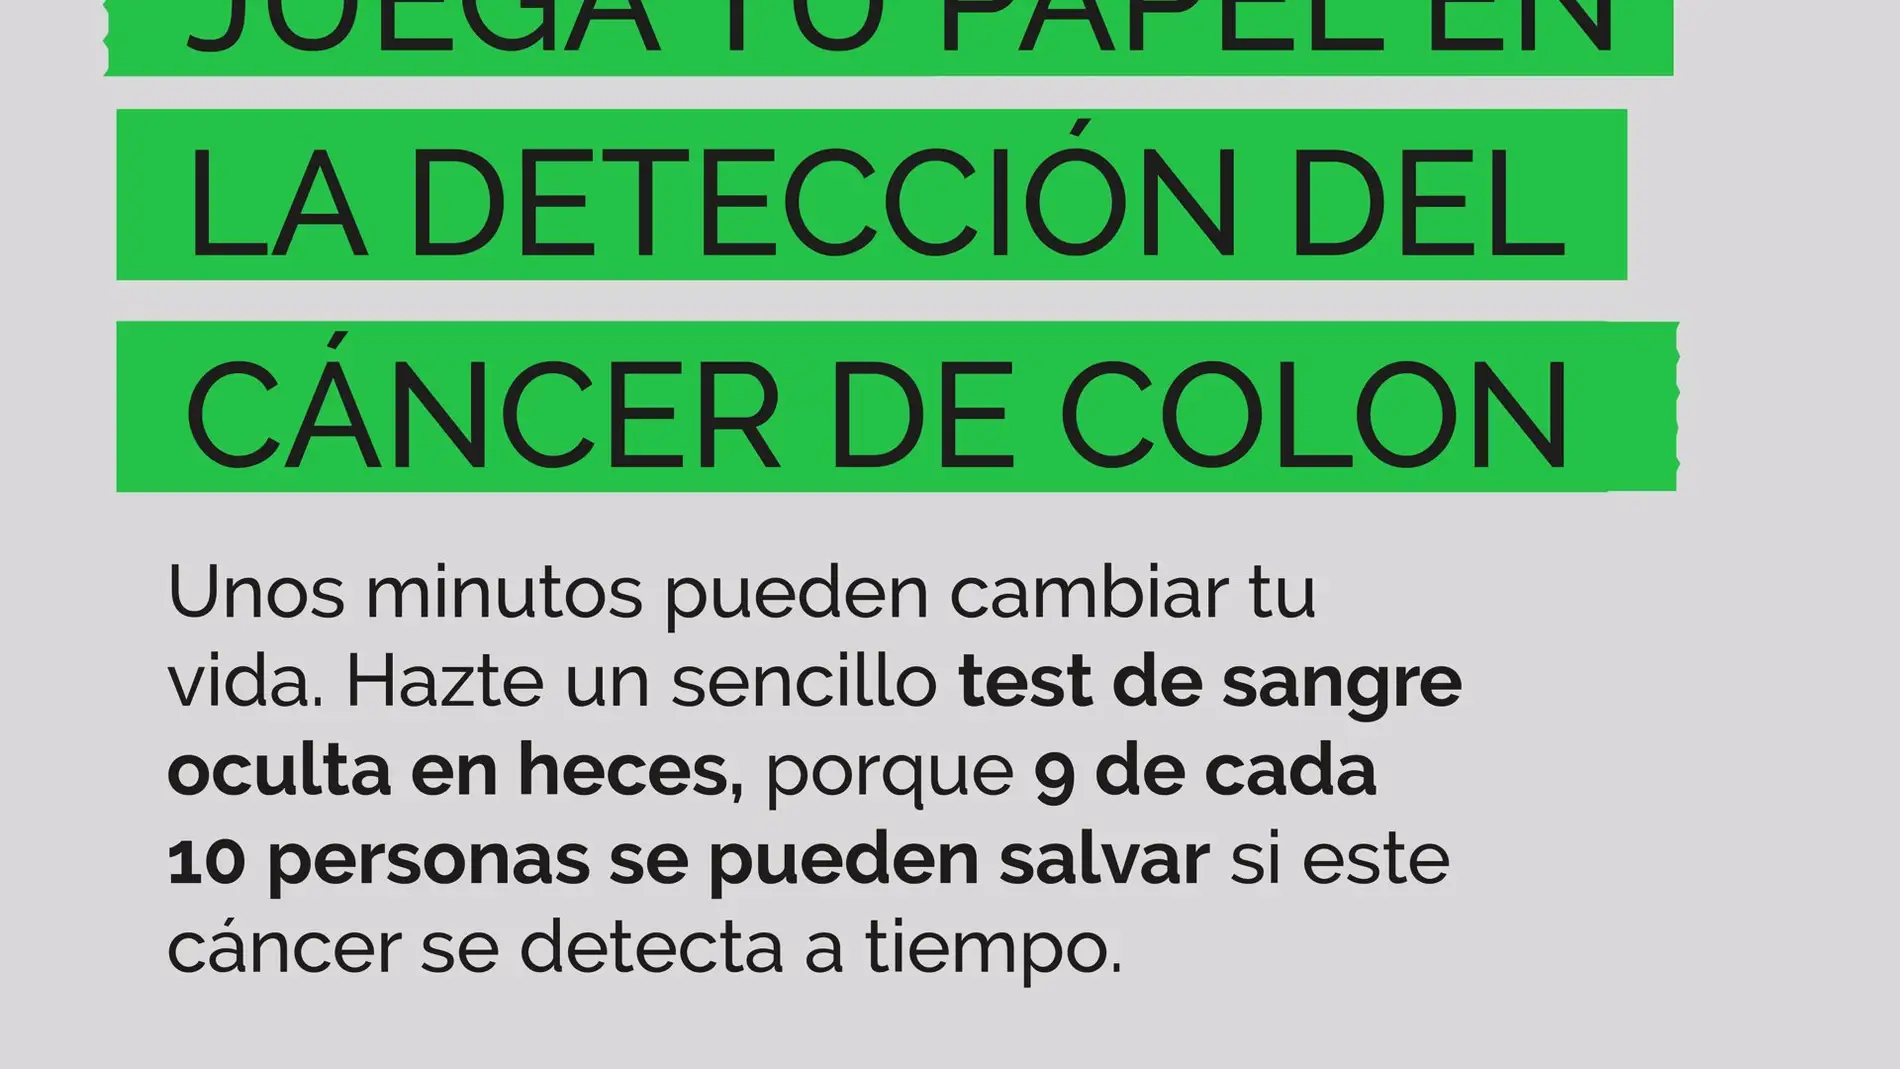 La provincia de Badajoz registró el pasado año 964 nuevos casos de cáncer colorrectal, según la AECC